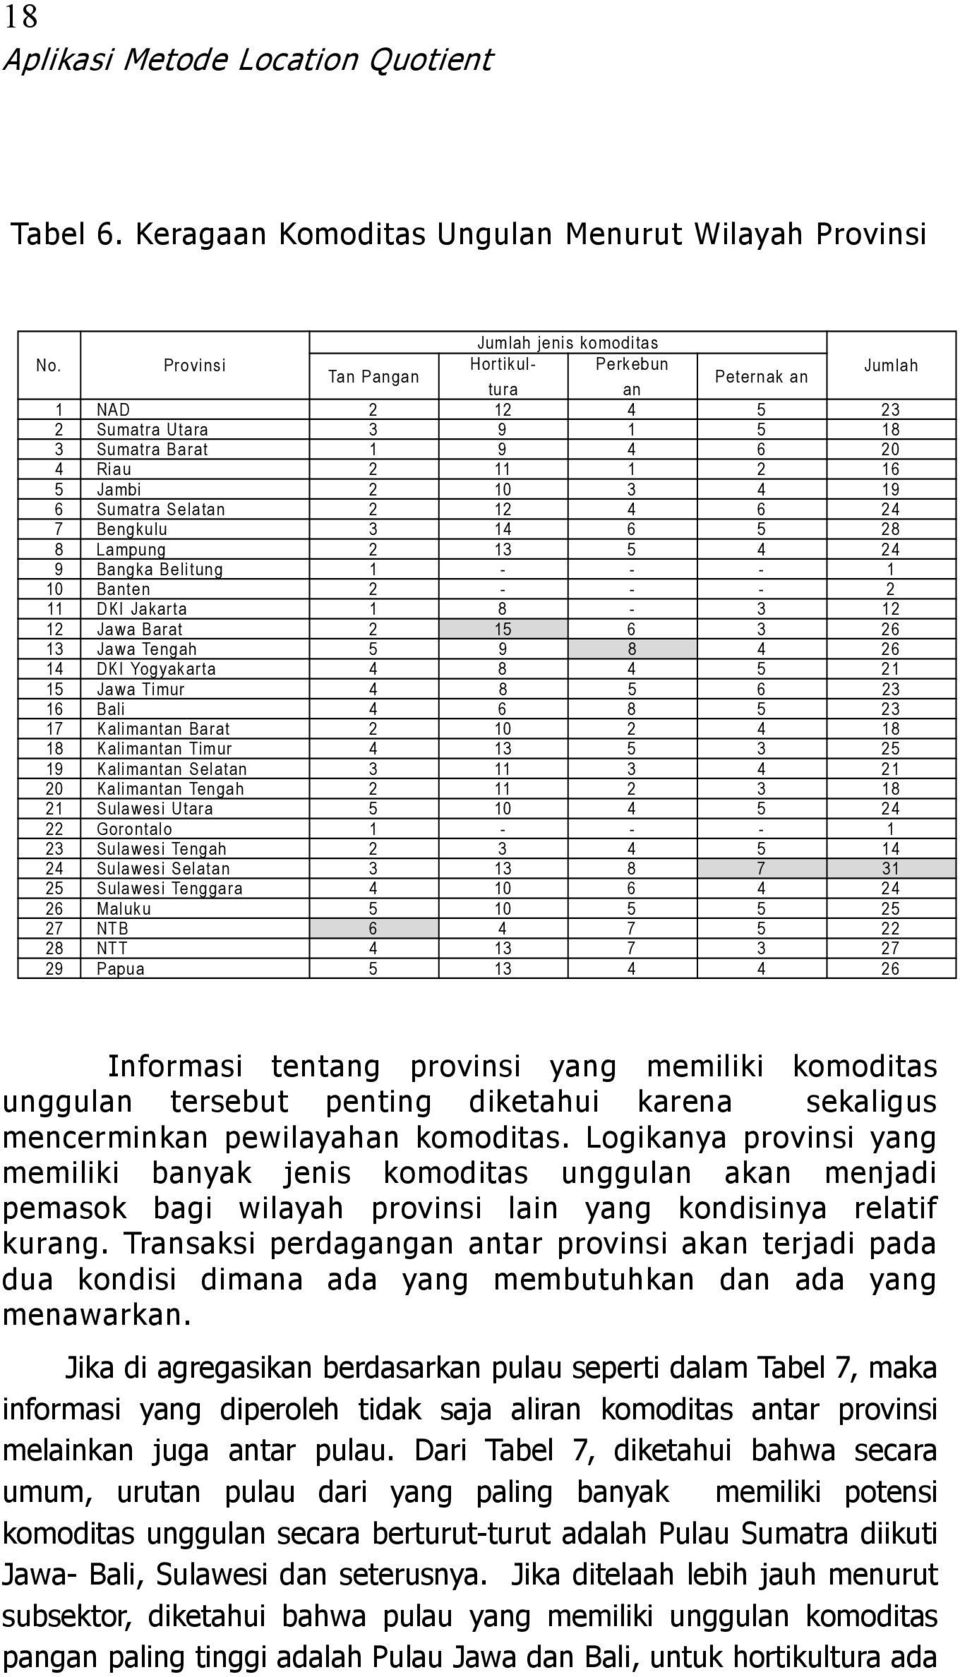 Kalimantan Selatan Kalimantan Tengah Sulawesi Utara Gorontalo - - - Sulawesi Tengah Sulawesi Selatan Sulawesi Tenggara Maluku NTB NTT Papua Informasi tentang provinsi yang memiliki komoditas unggulan